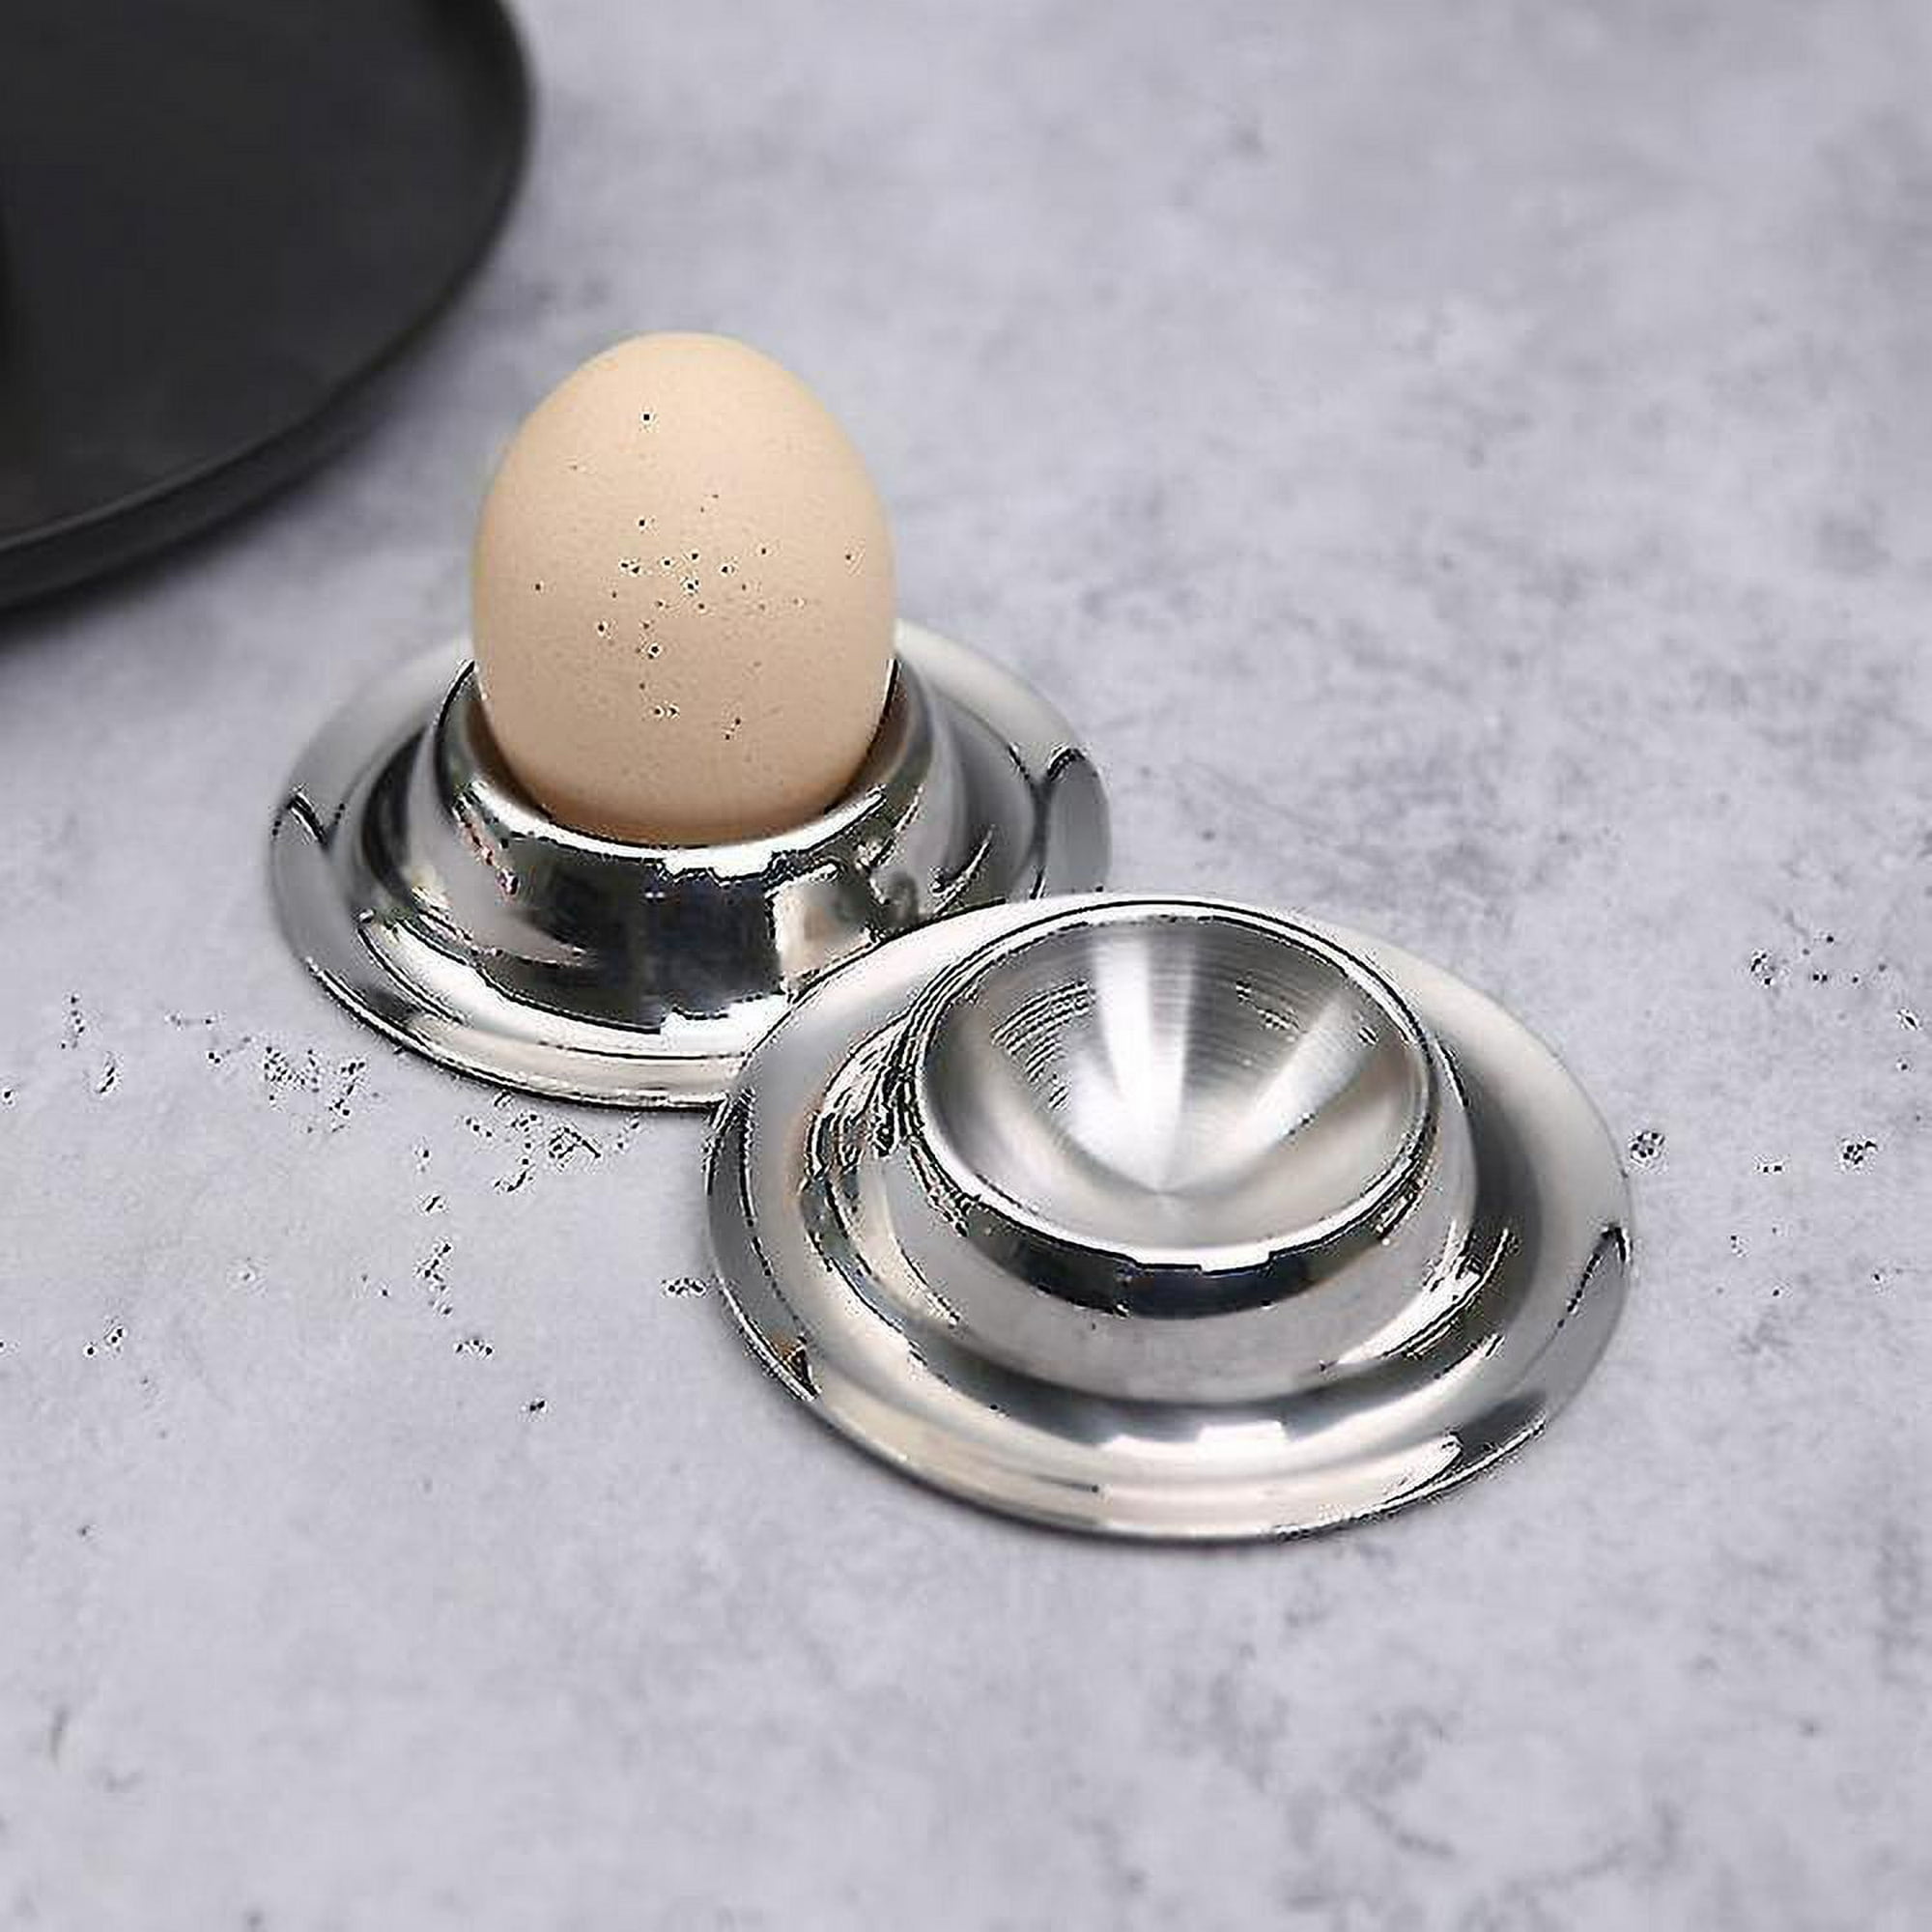 Hueveras con soporte para huevos cocidos, juego de herramientas